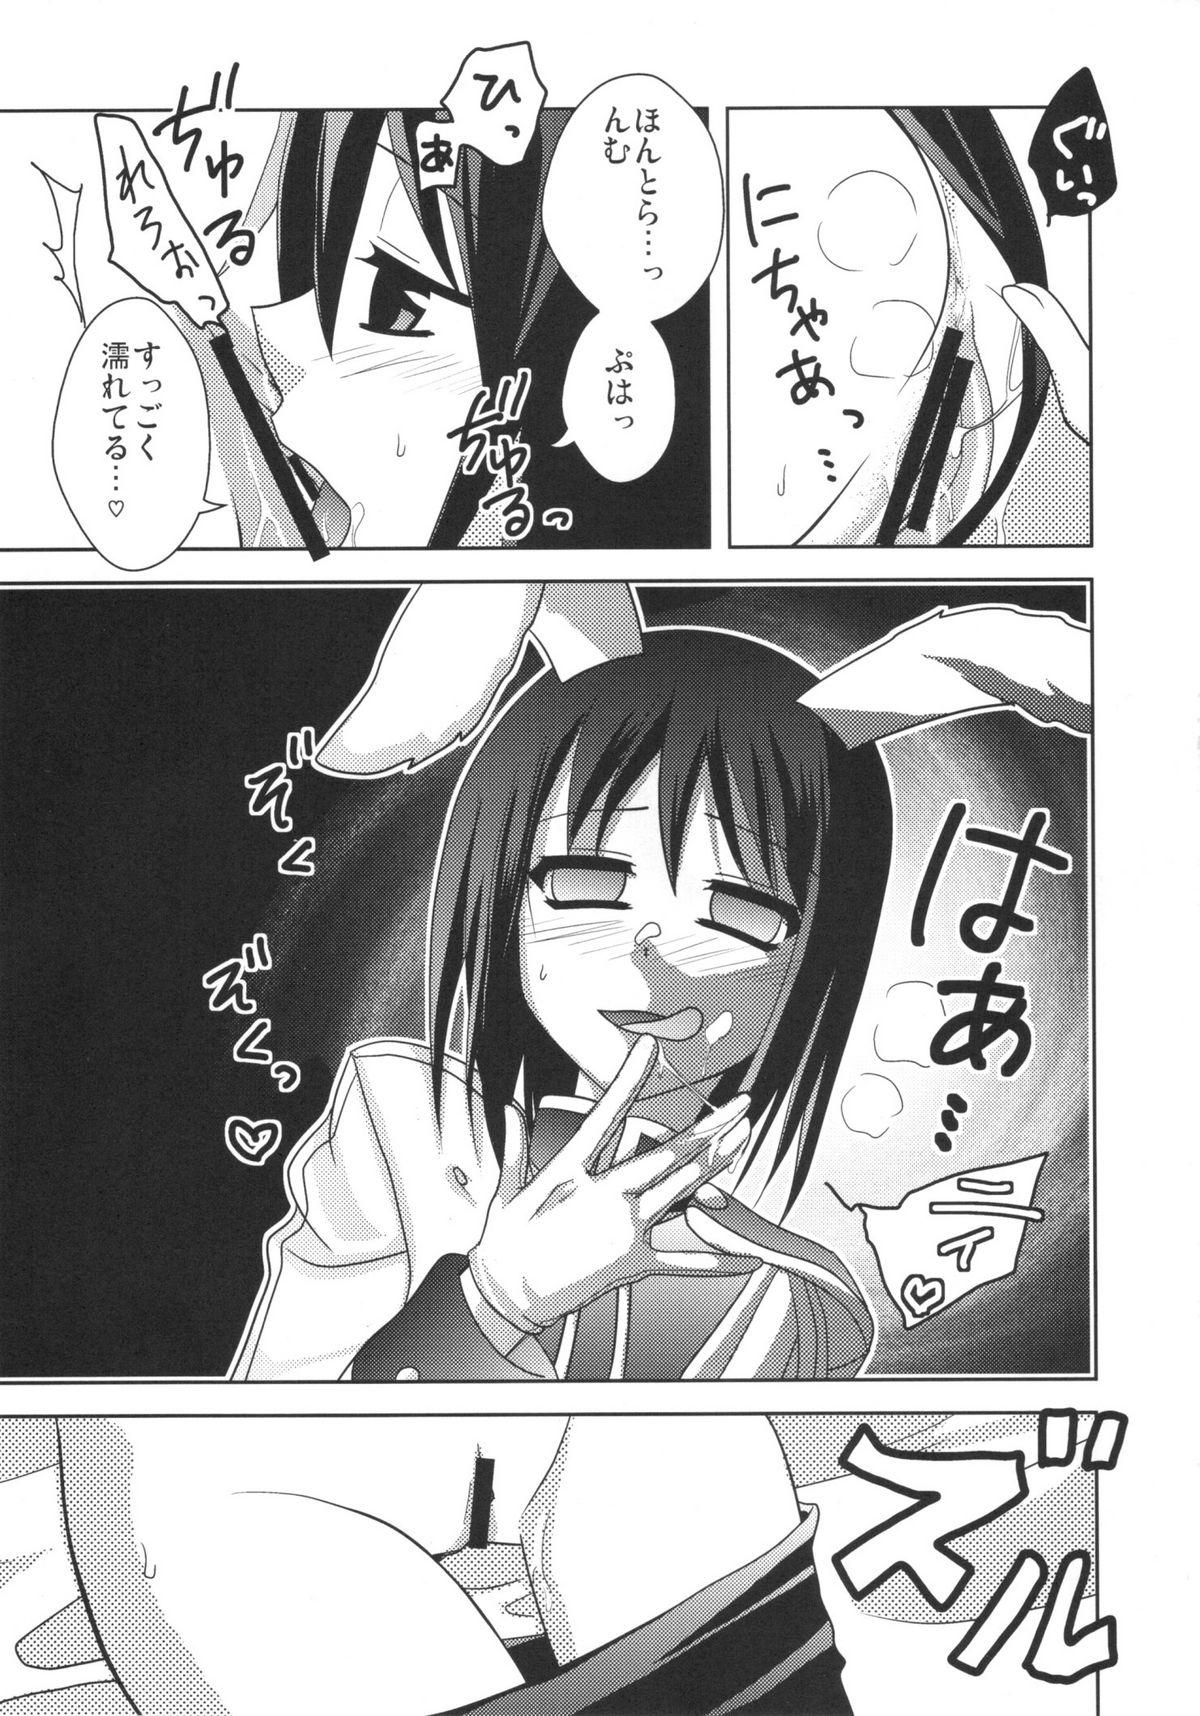 Car RabiRabi - Umineko no naku koro ni Spanking - Page 12